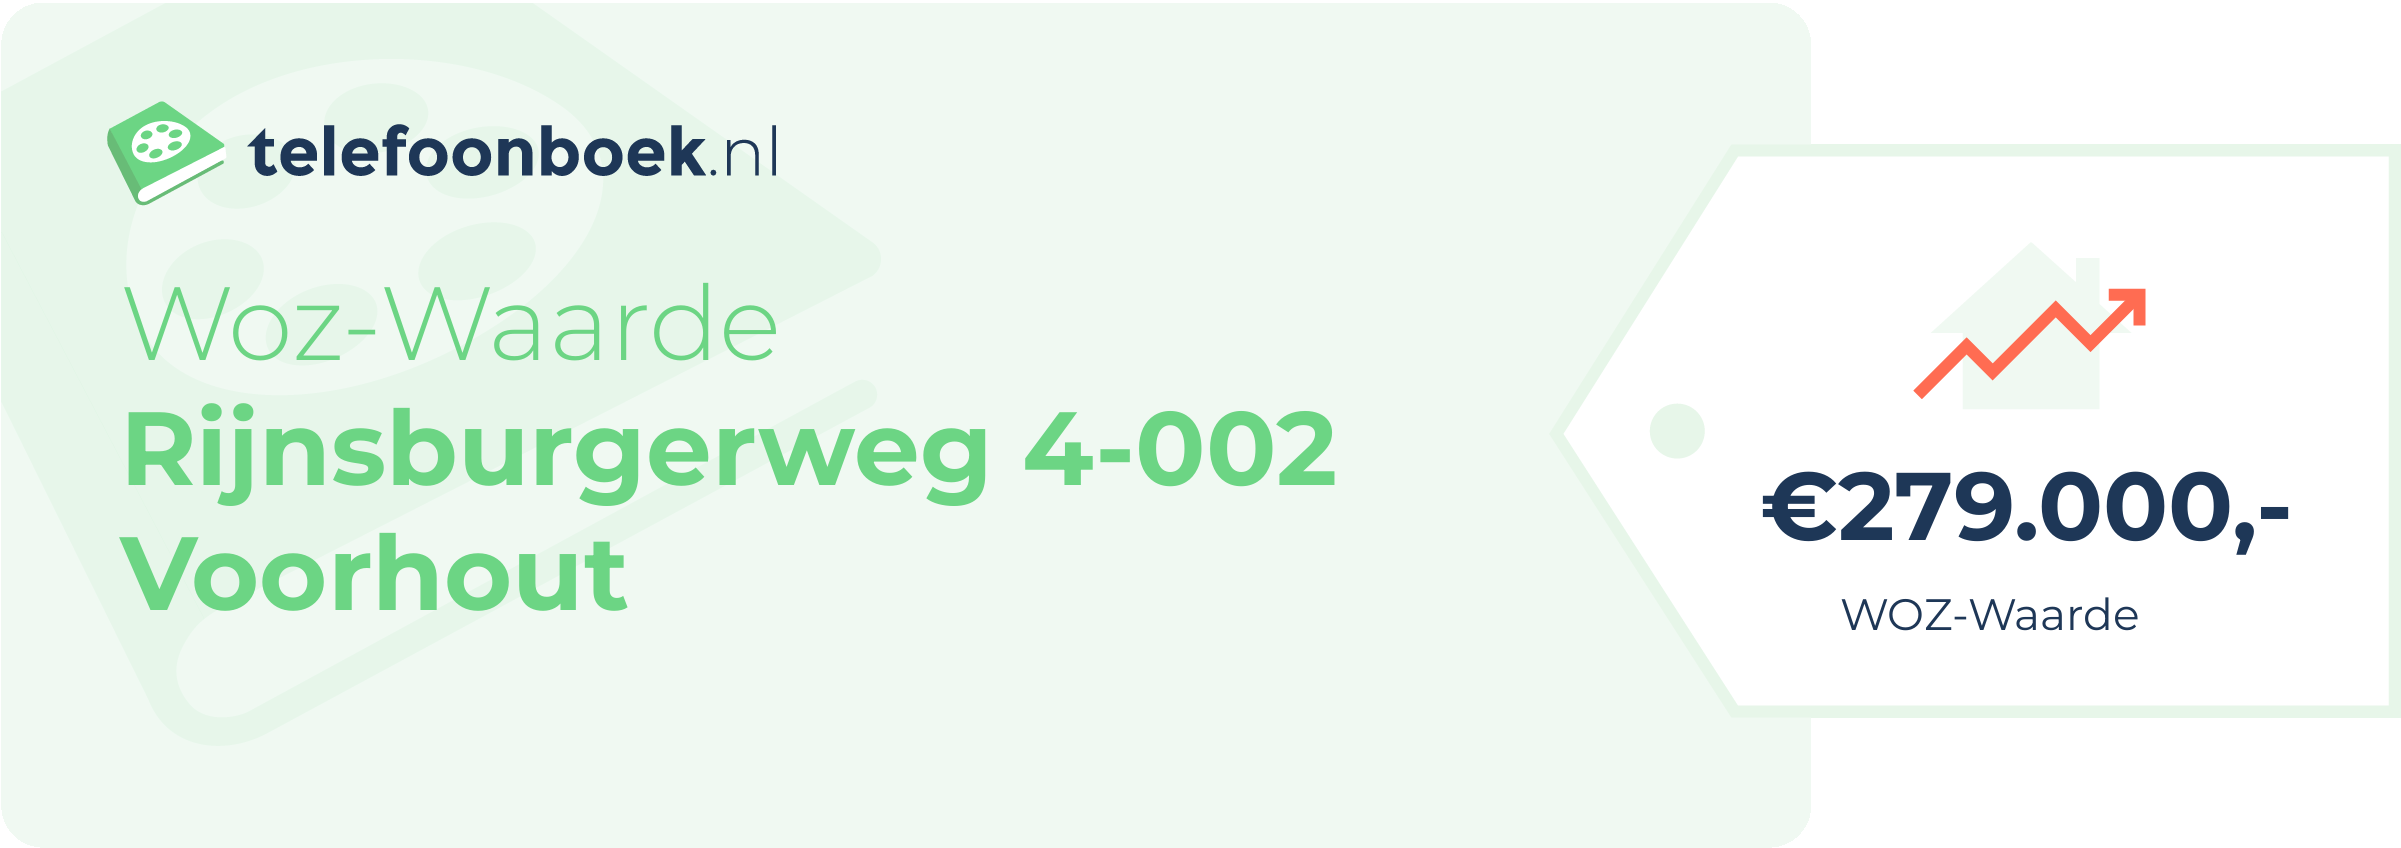 WOZ-waarde Rijnsburgerweg 4-002 Voorhout